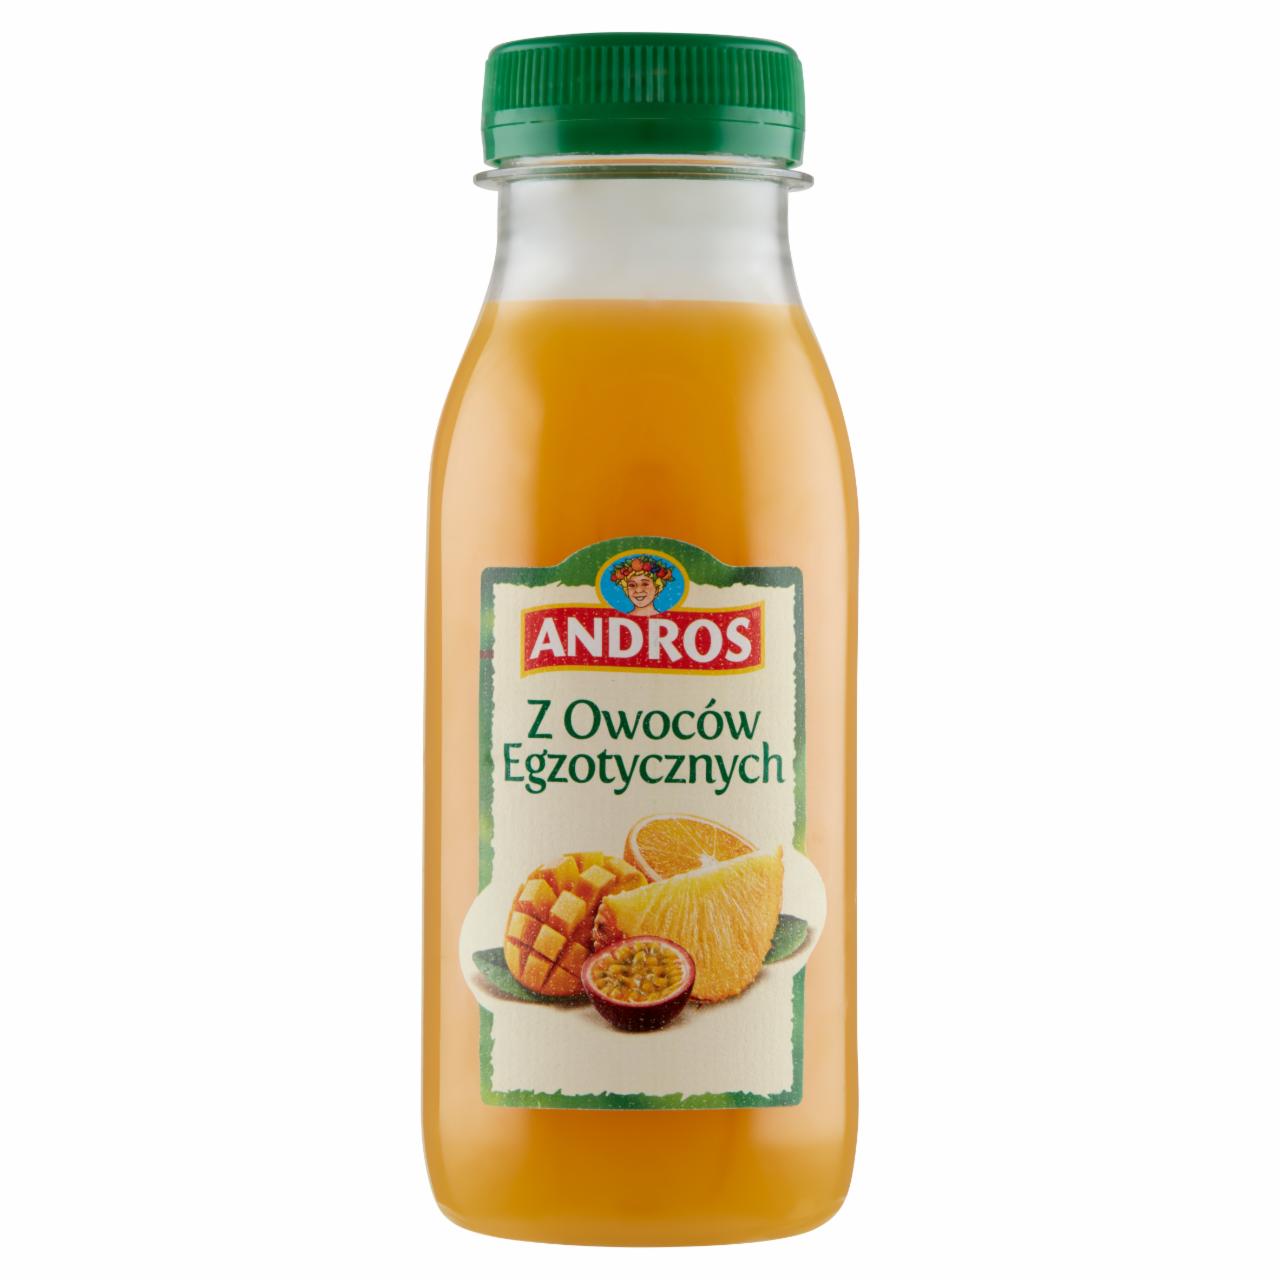 Zdjęcia - Andros Produkt do picia z owoców egzotycznych 250 ml